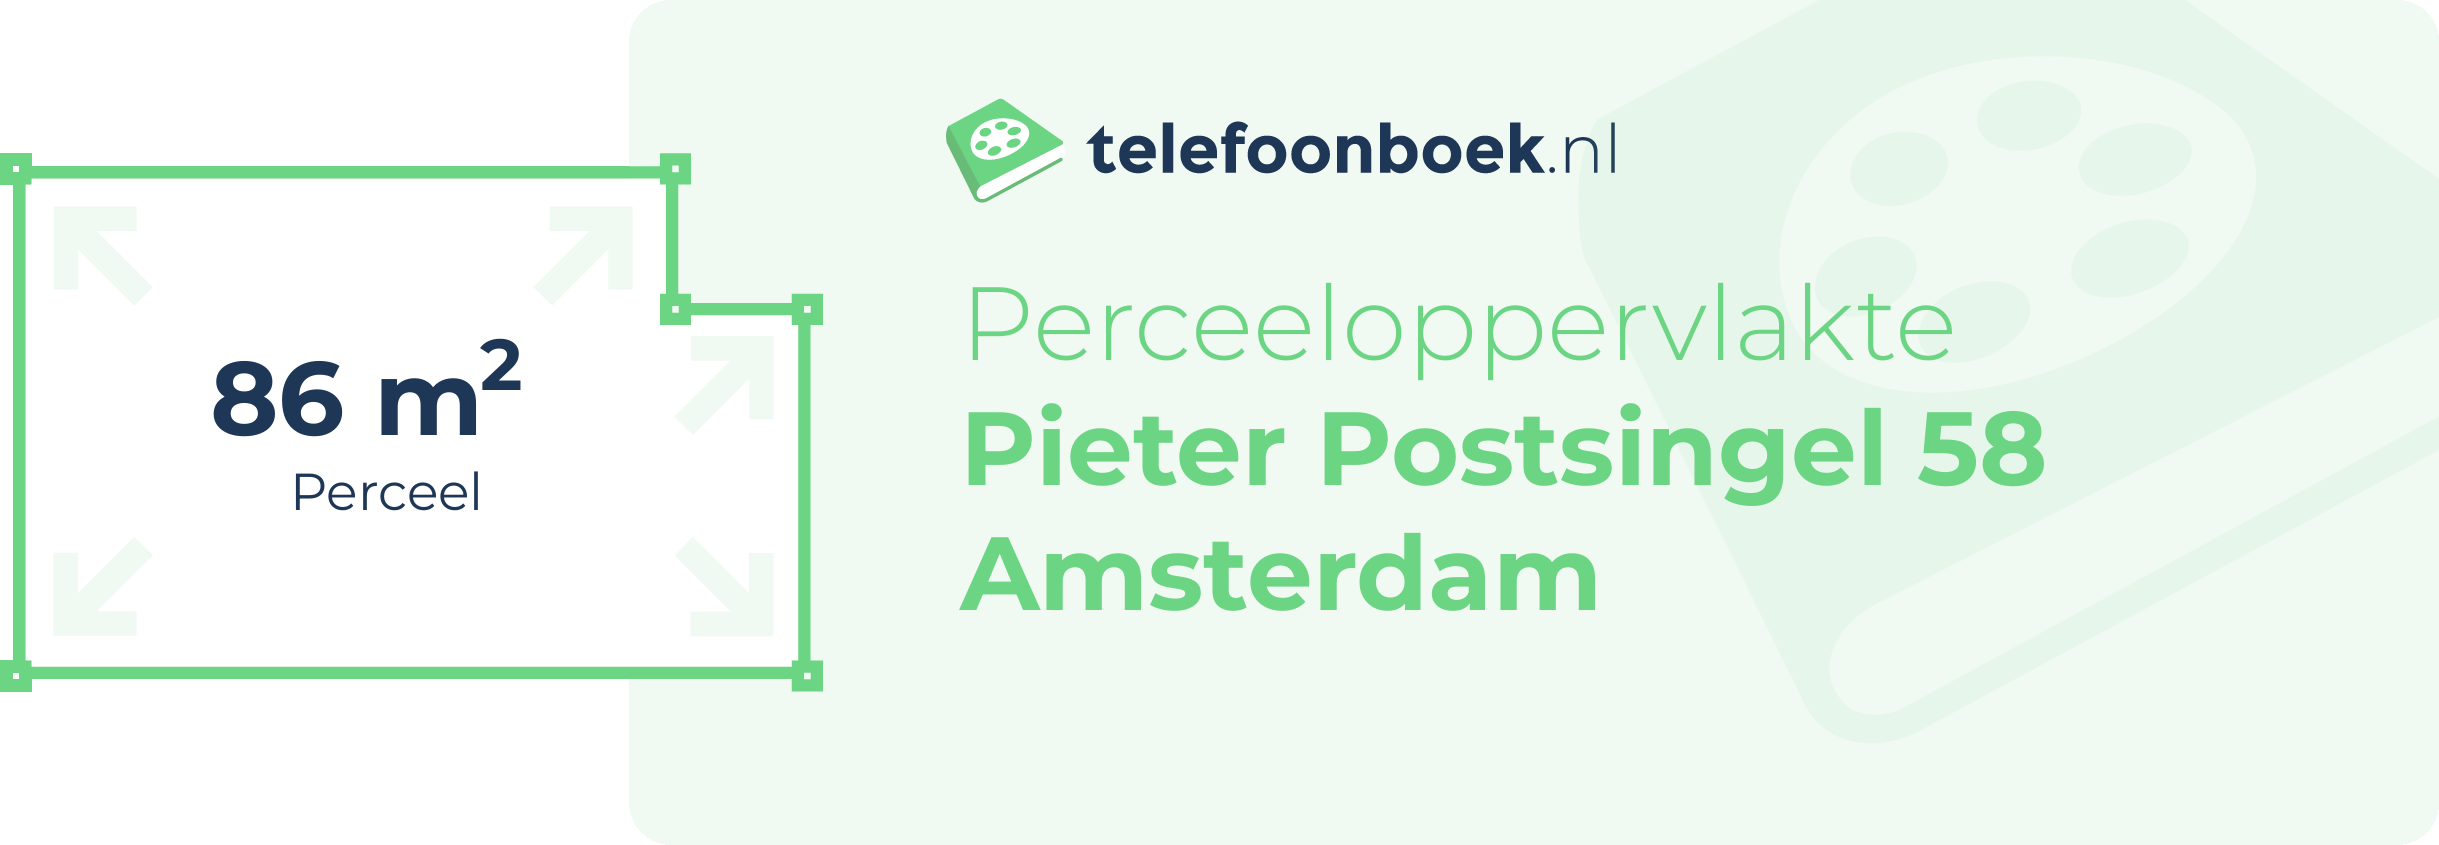 Perceeloppervlakte Pieter Postsingel 58 Amsterdam